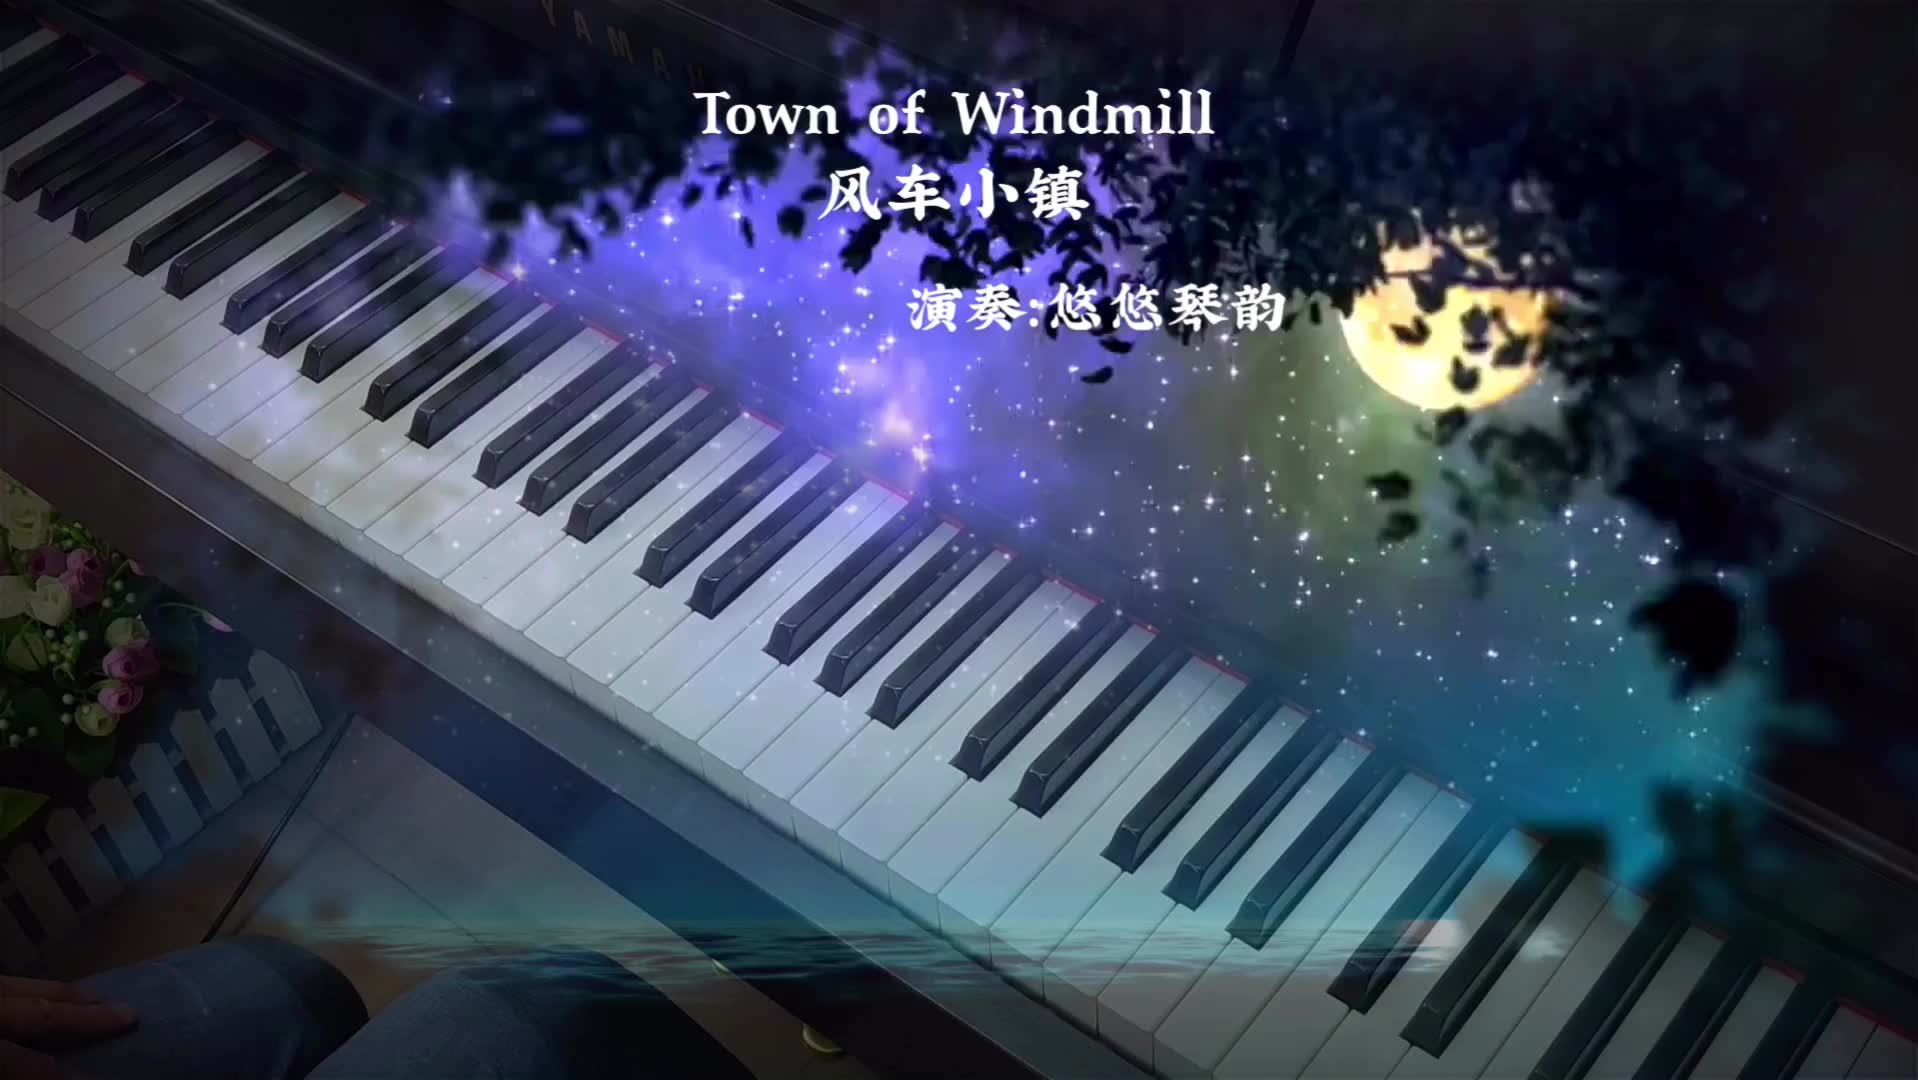 【钢琴】聆听《Town of Windmill 风车小镇》，整个世界都安静了_哔哩哔哩 (゜-゜)つロ 干杯~-bilibili